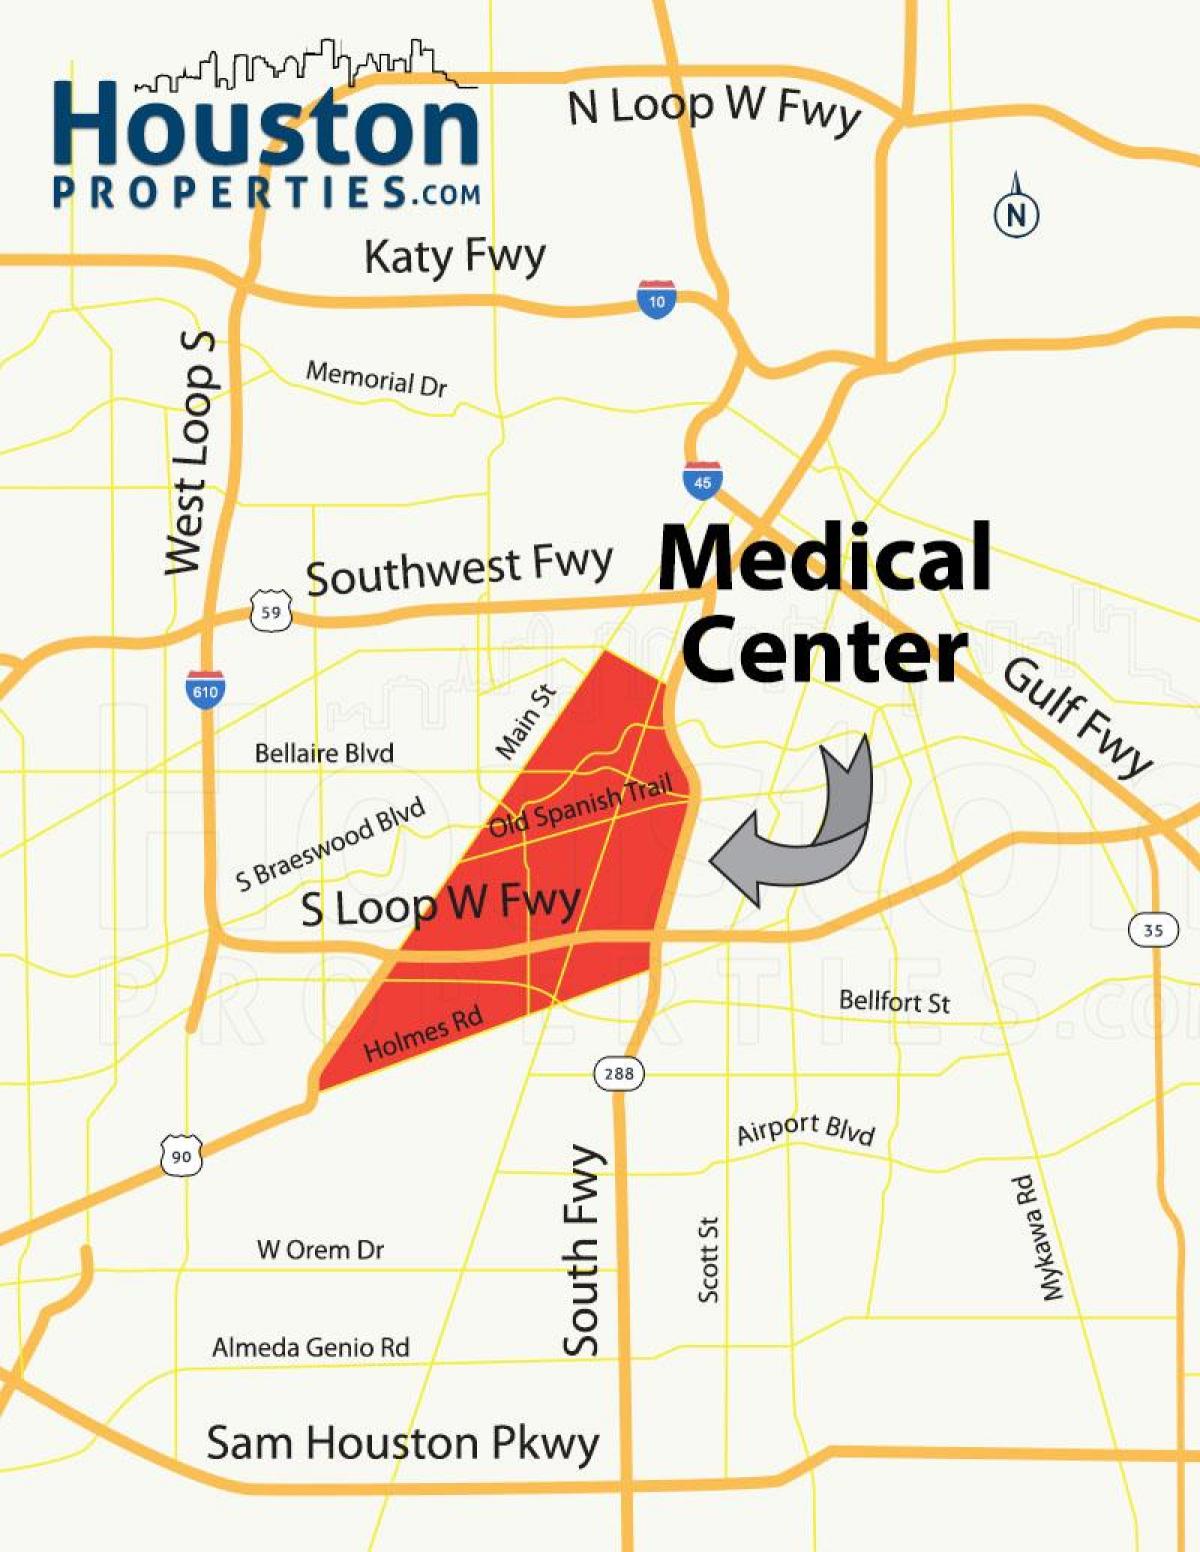 bản đồ của Houston trung tâm y tế